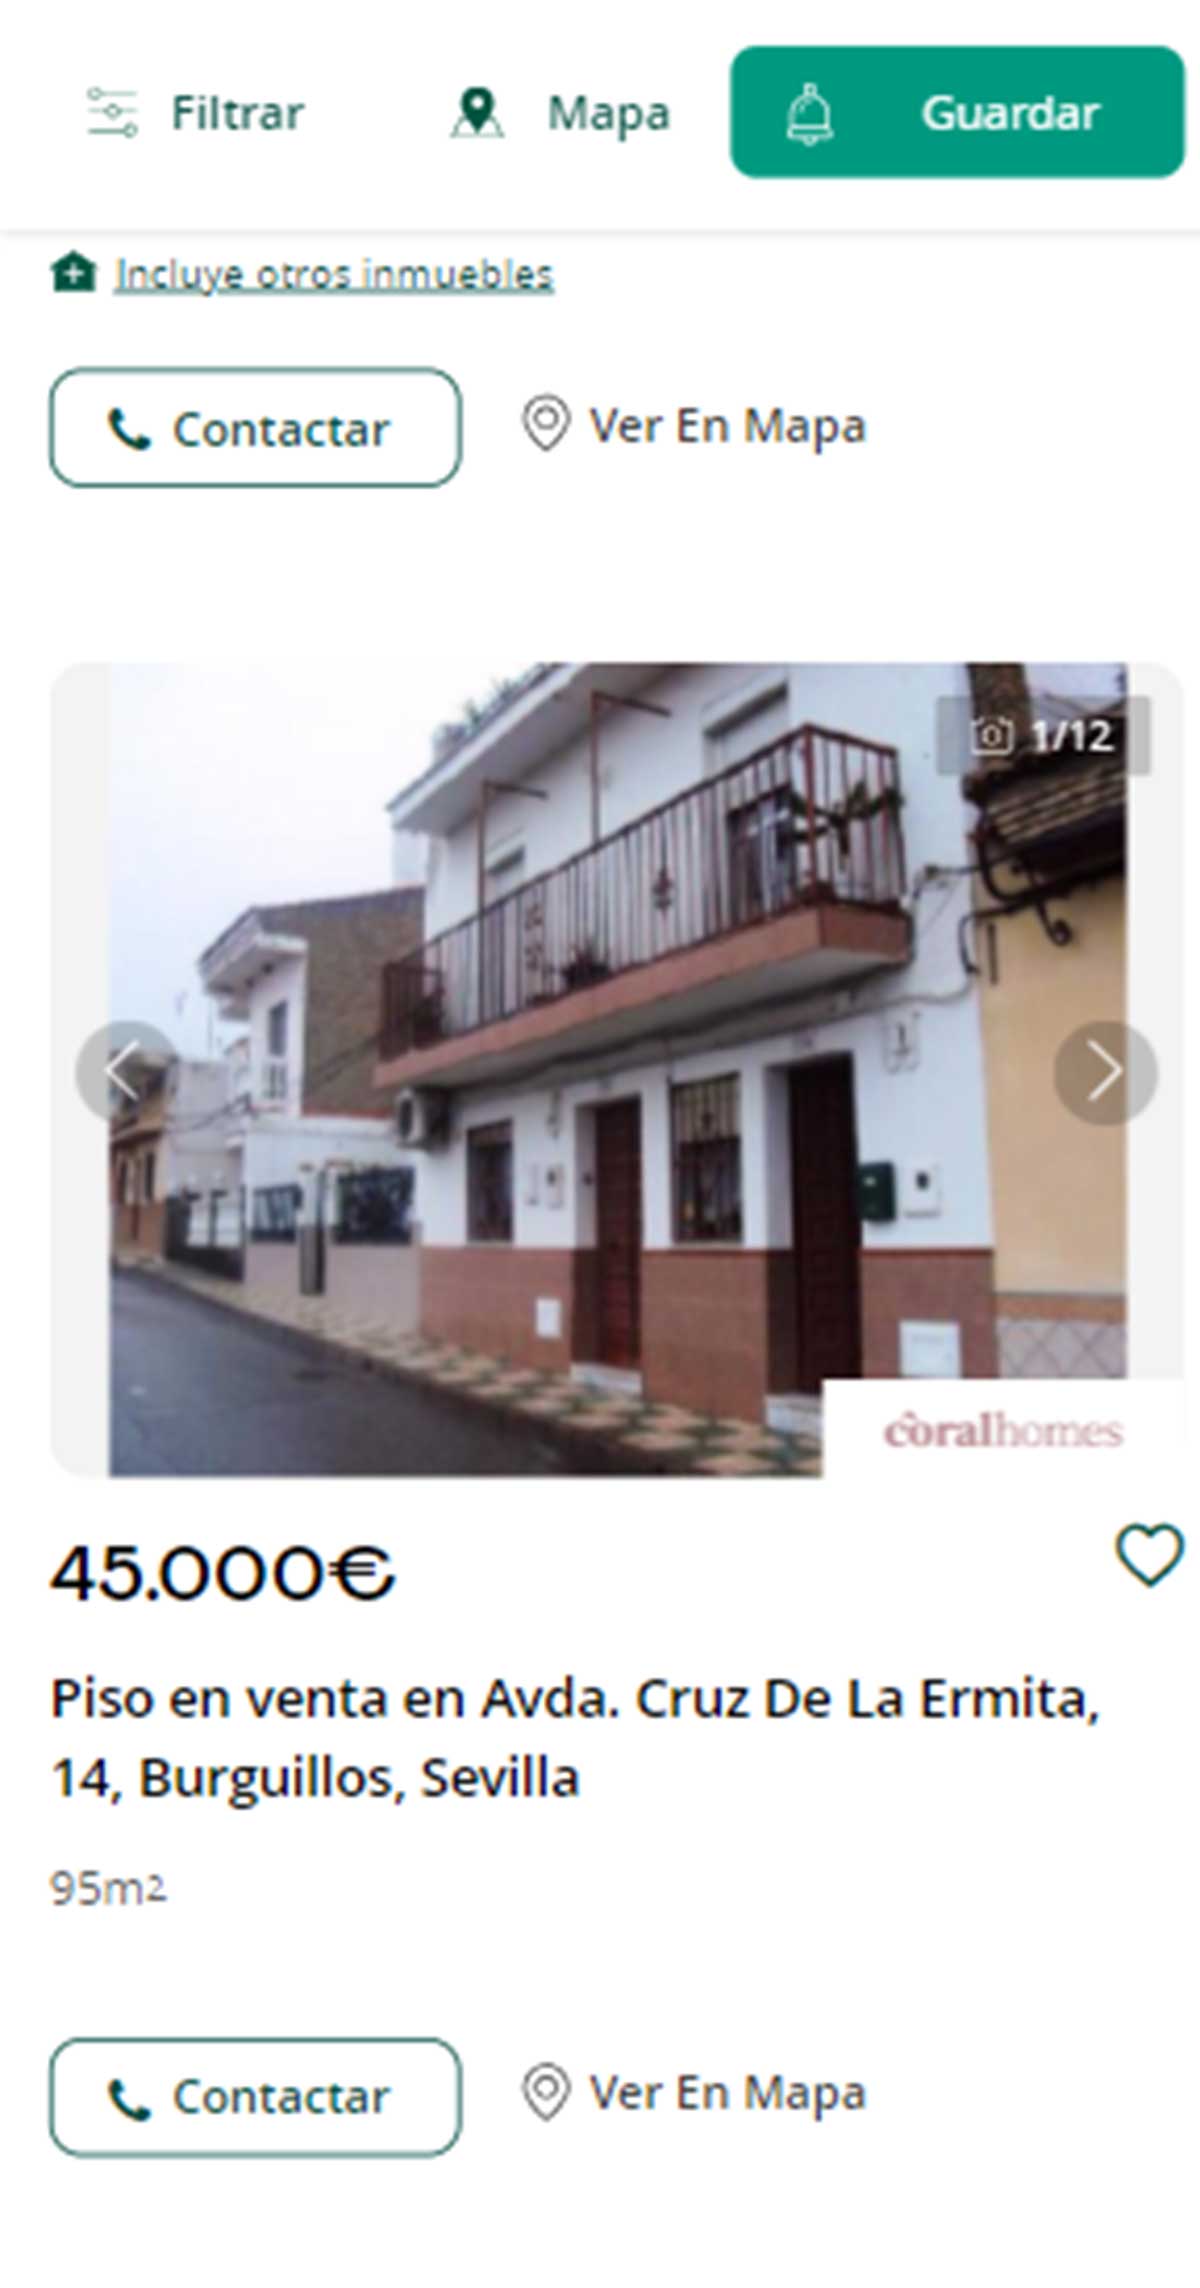 Piso en Sevilla por 45.000 euros